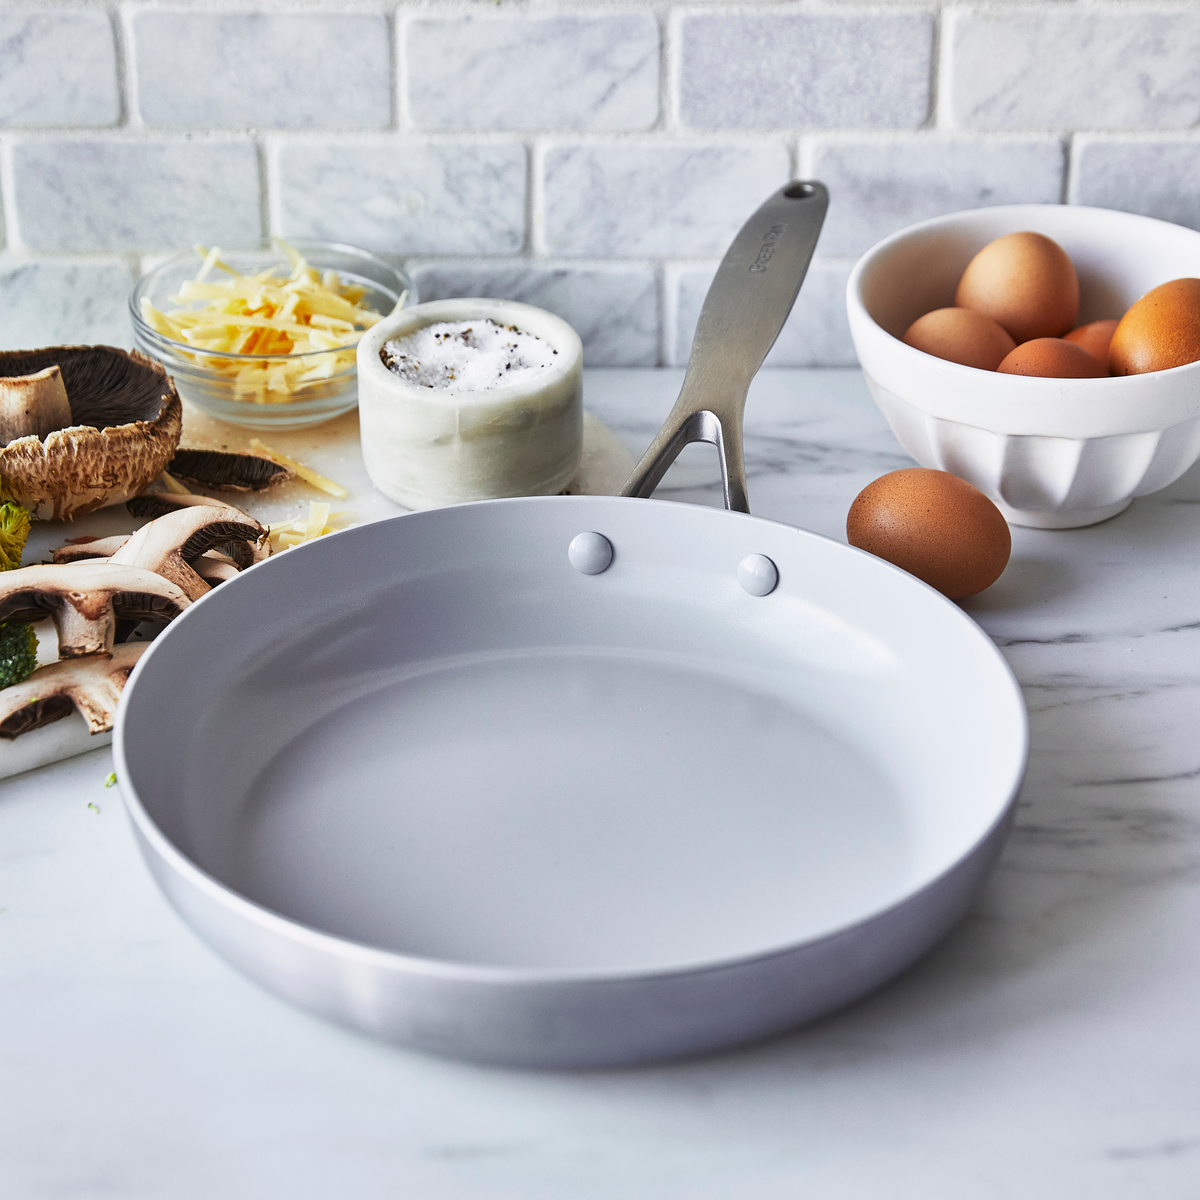 GreenPan - Venice Pro Ceramic Non-stick Fry Pan, 11 Inch – Kitchen